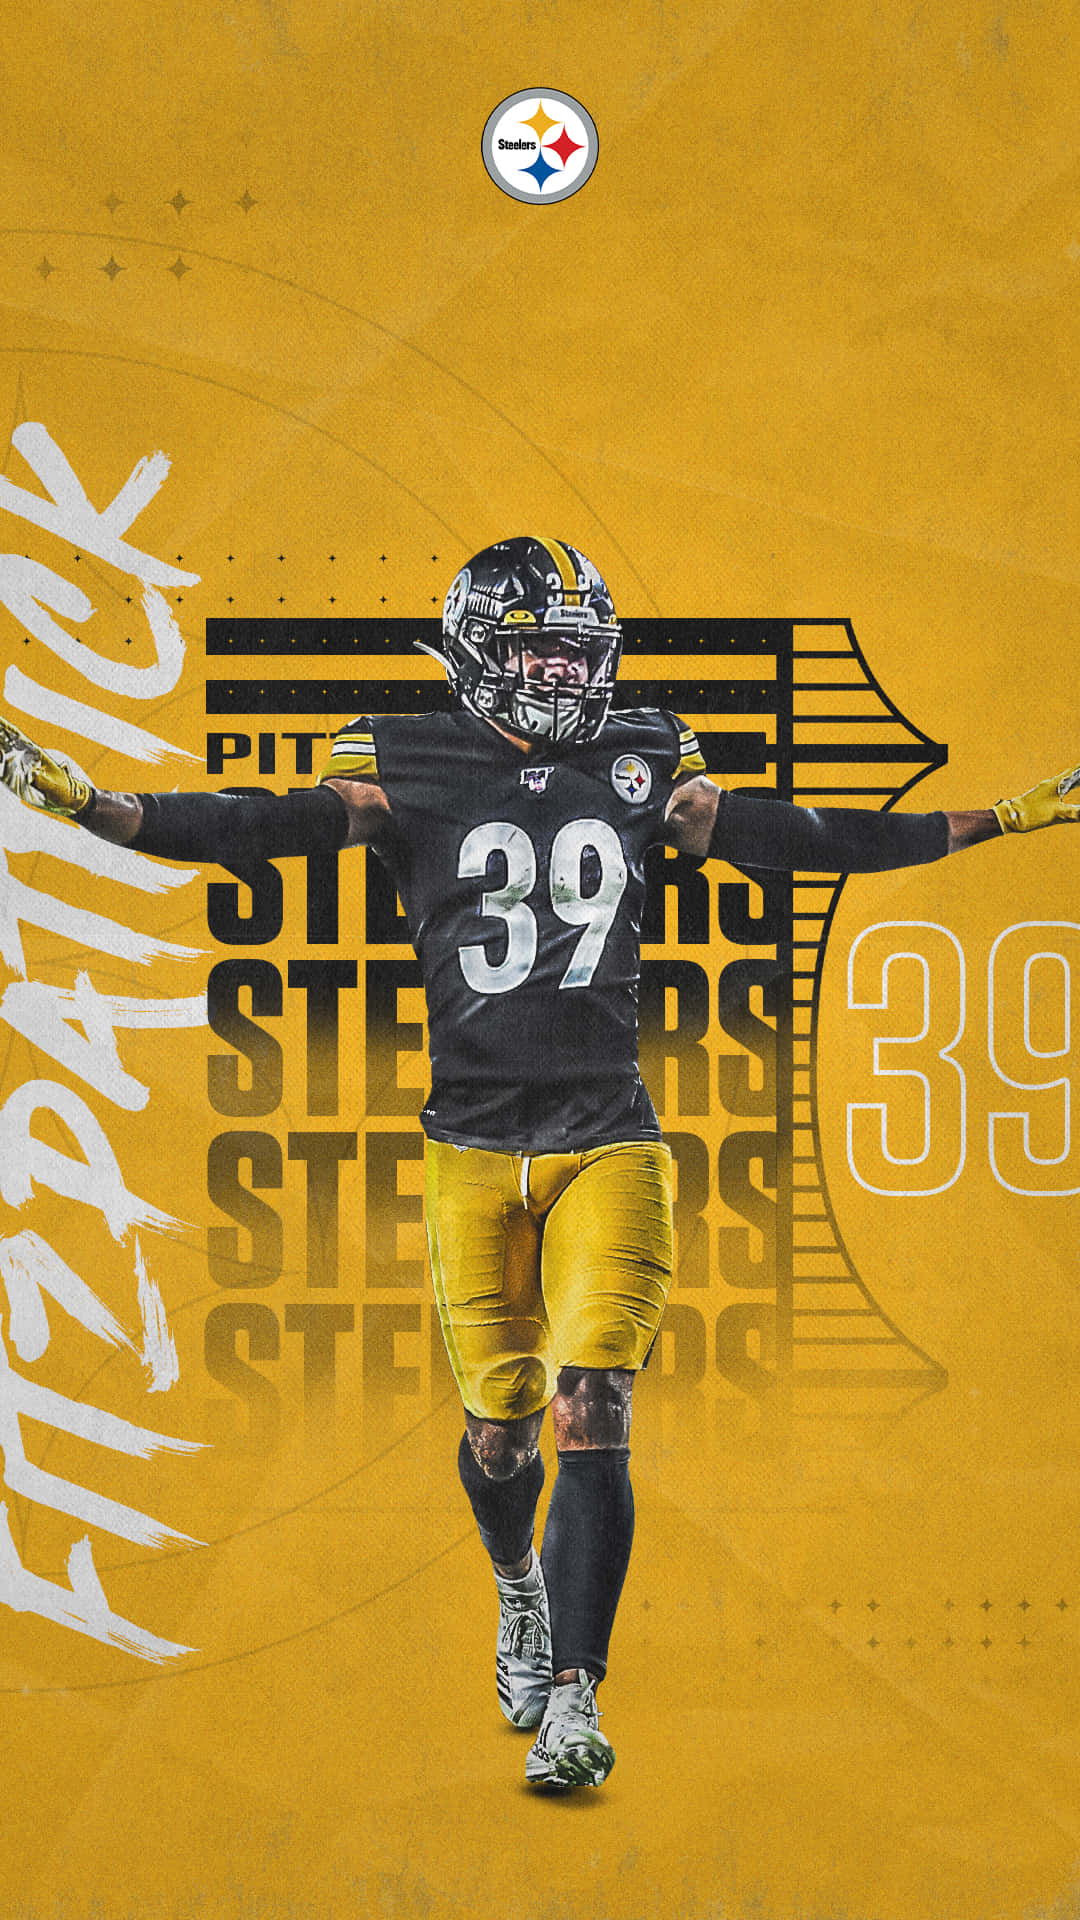 Ellogo Oficial Del Equipo De Fútbol Americano Pittsburgh Steelers De La Nfl. Fondo de pantalla